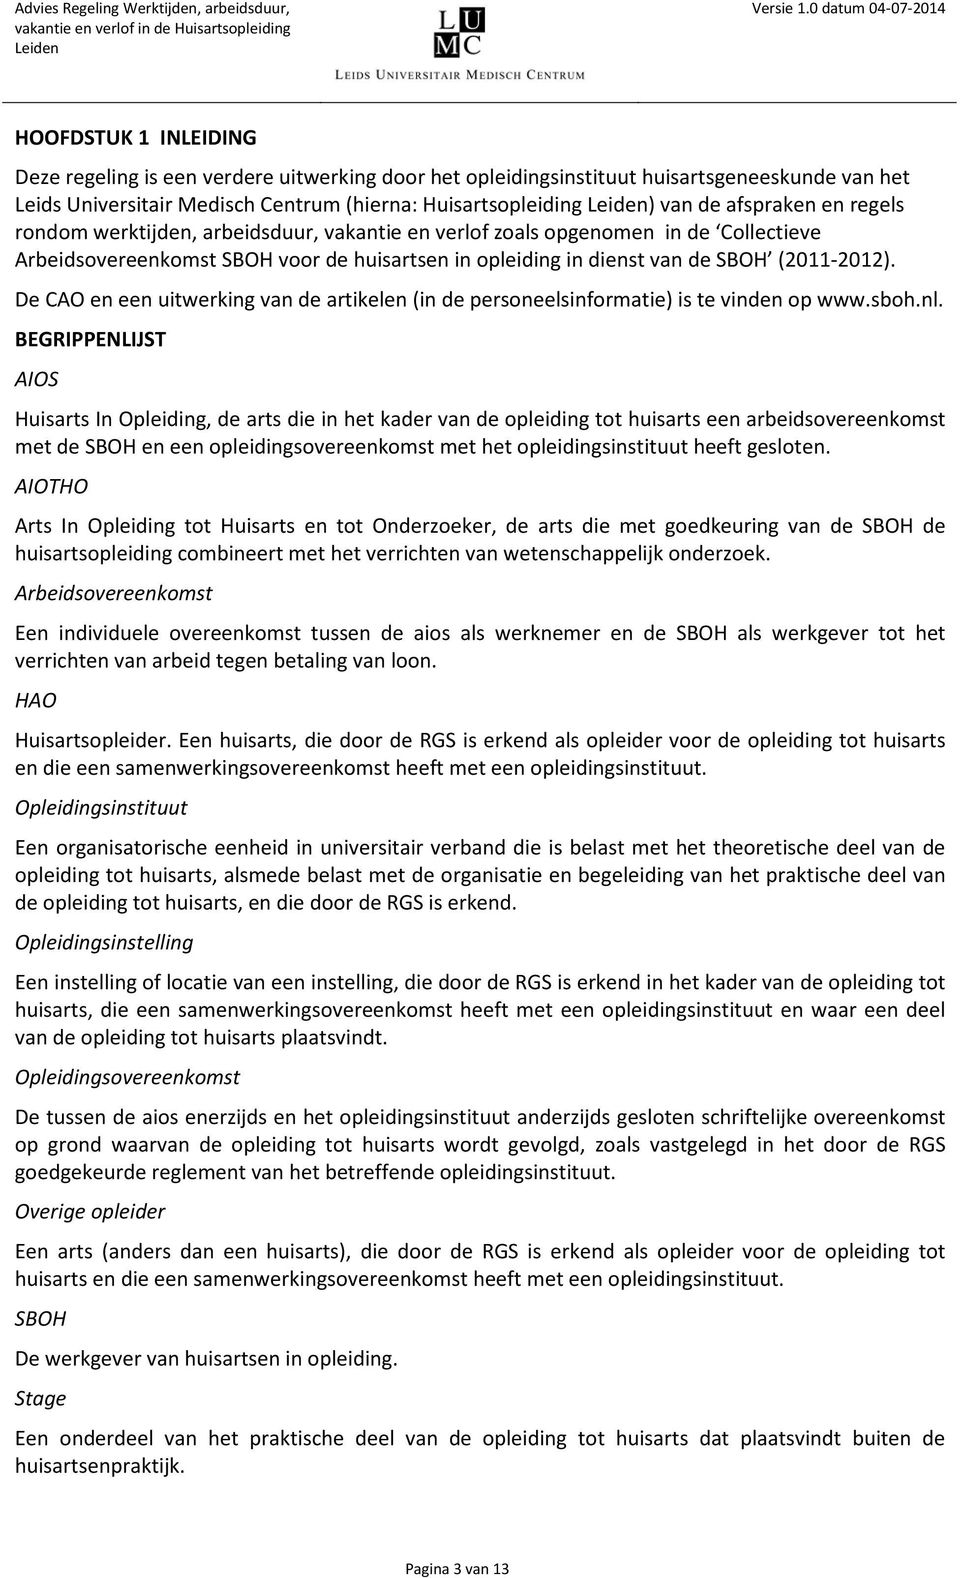 De CAO en een uitwerking van de artikelen (in de personeelsinformatie) is te vinden op www.sboh.nl.